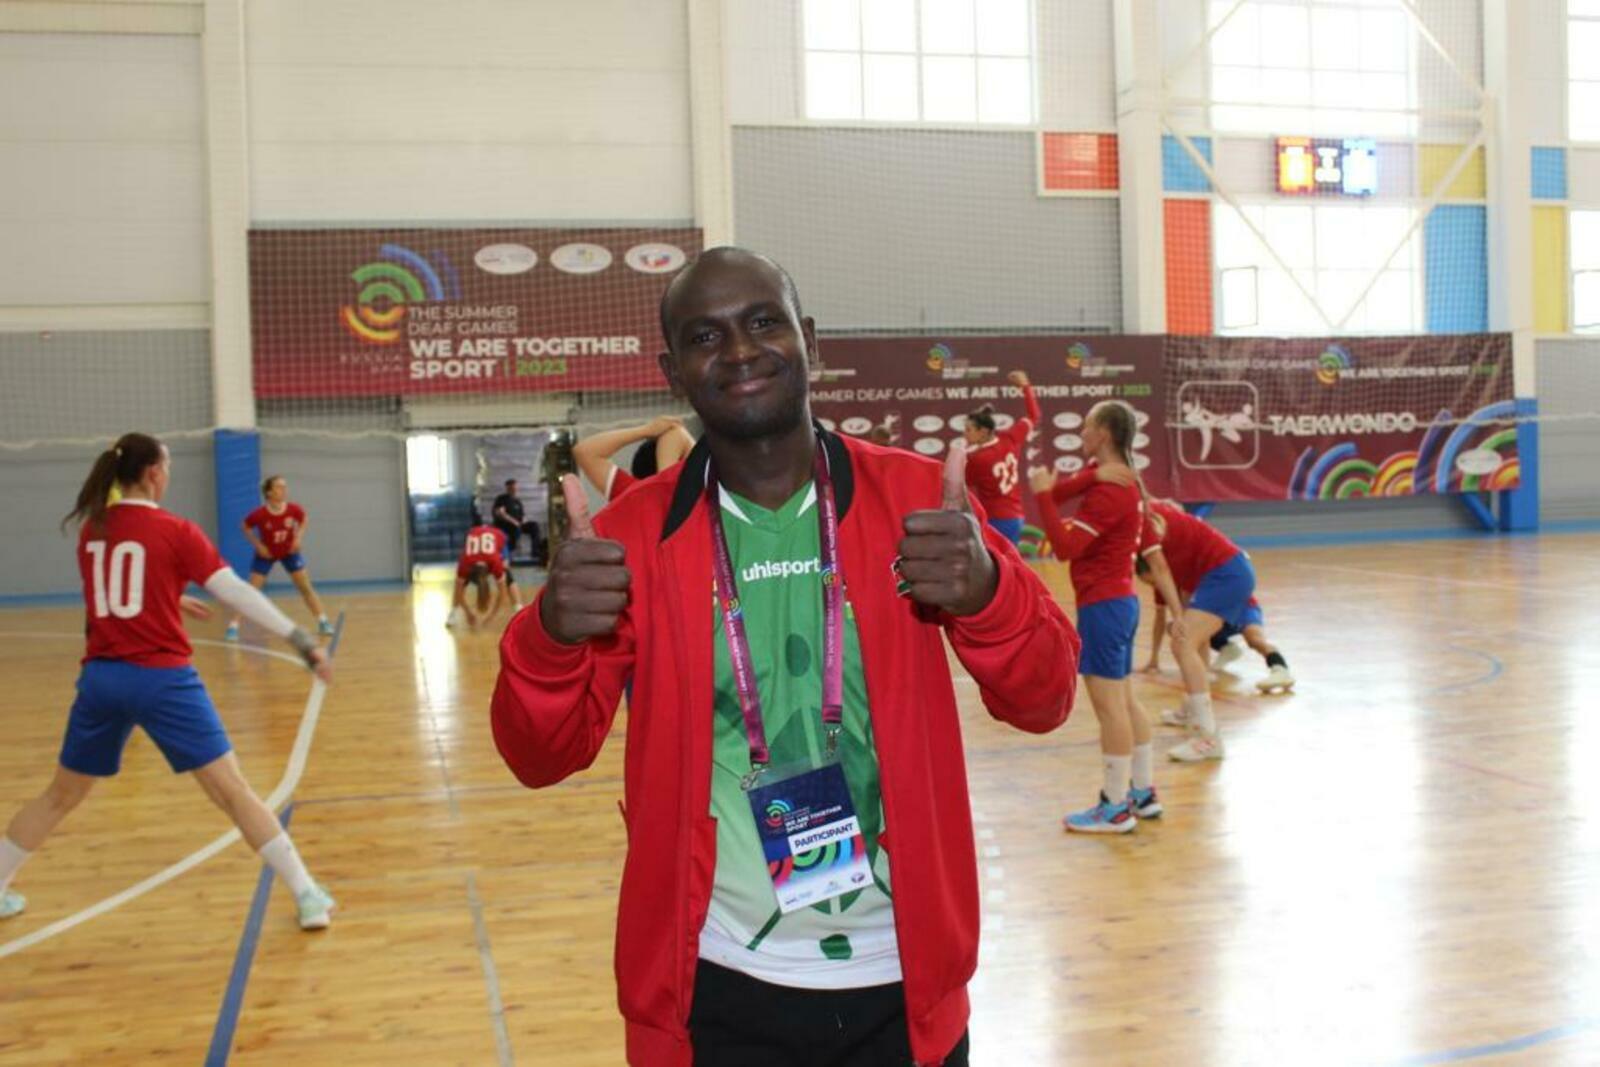 Гандболист из Кении: «В Уфе спортивная инфраструктура лучше, чем в Бразилии»